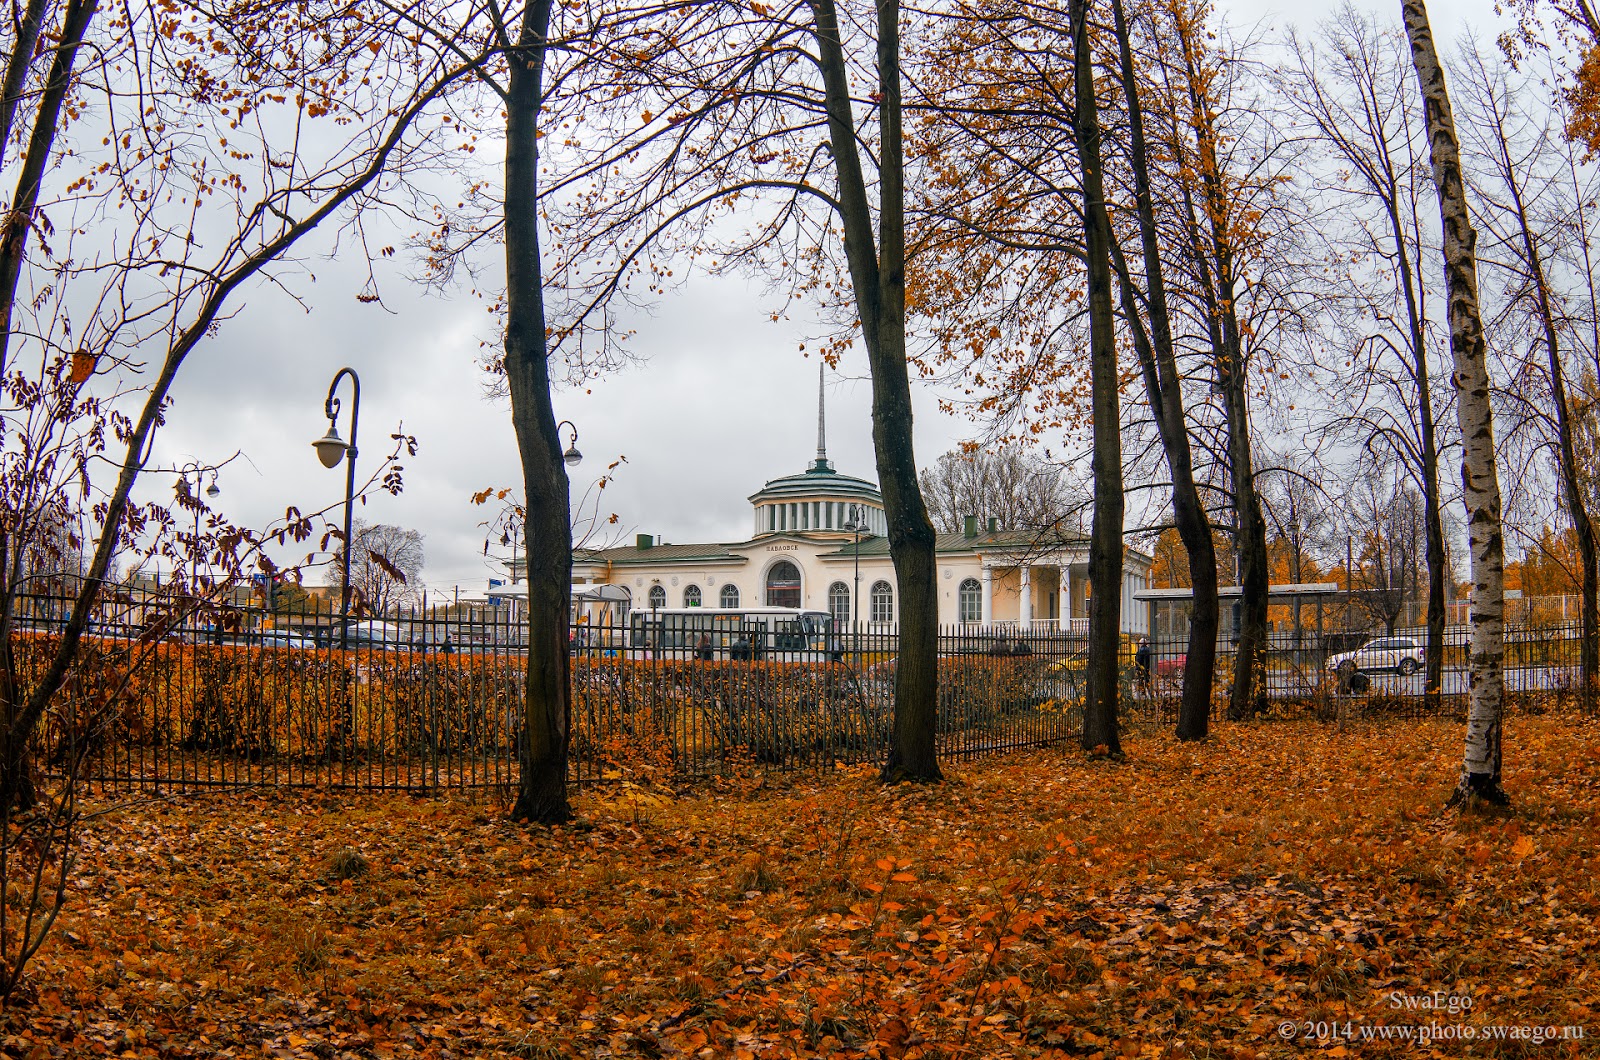 pavlovsk_autumn_2014_10_13_1850